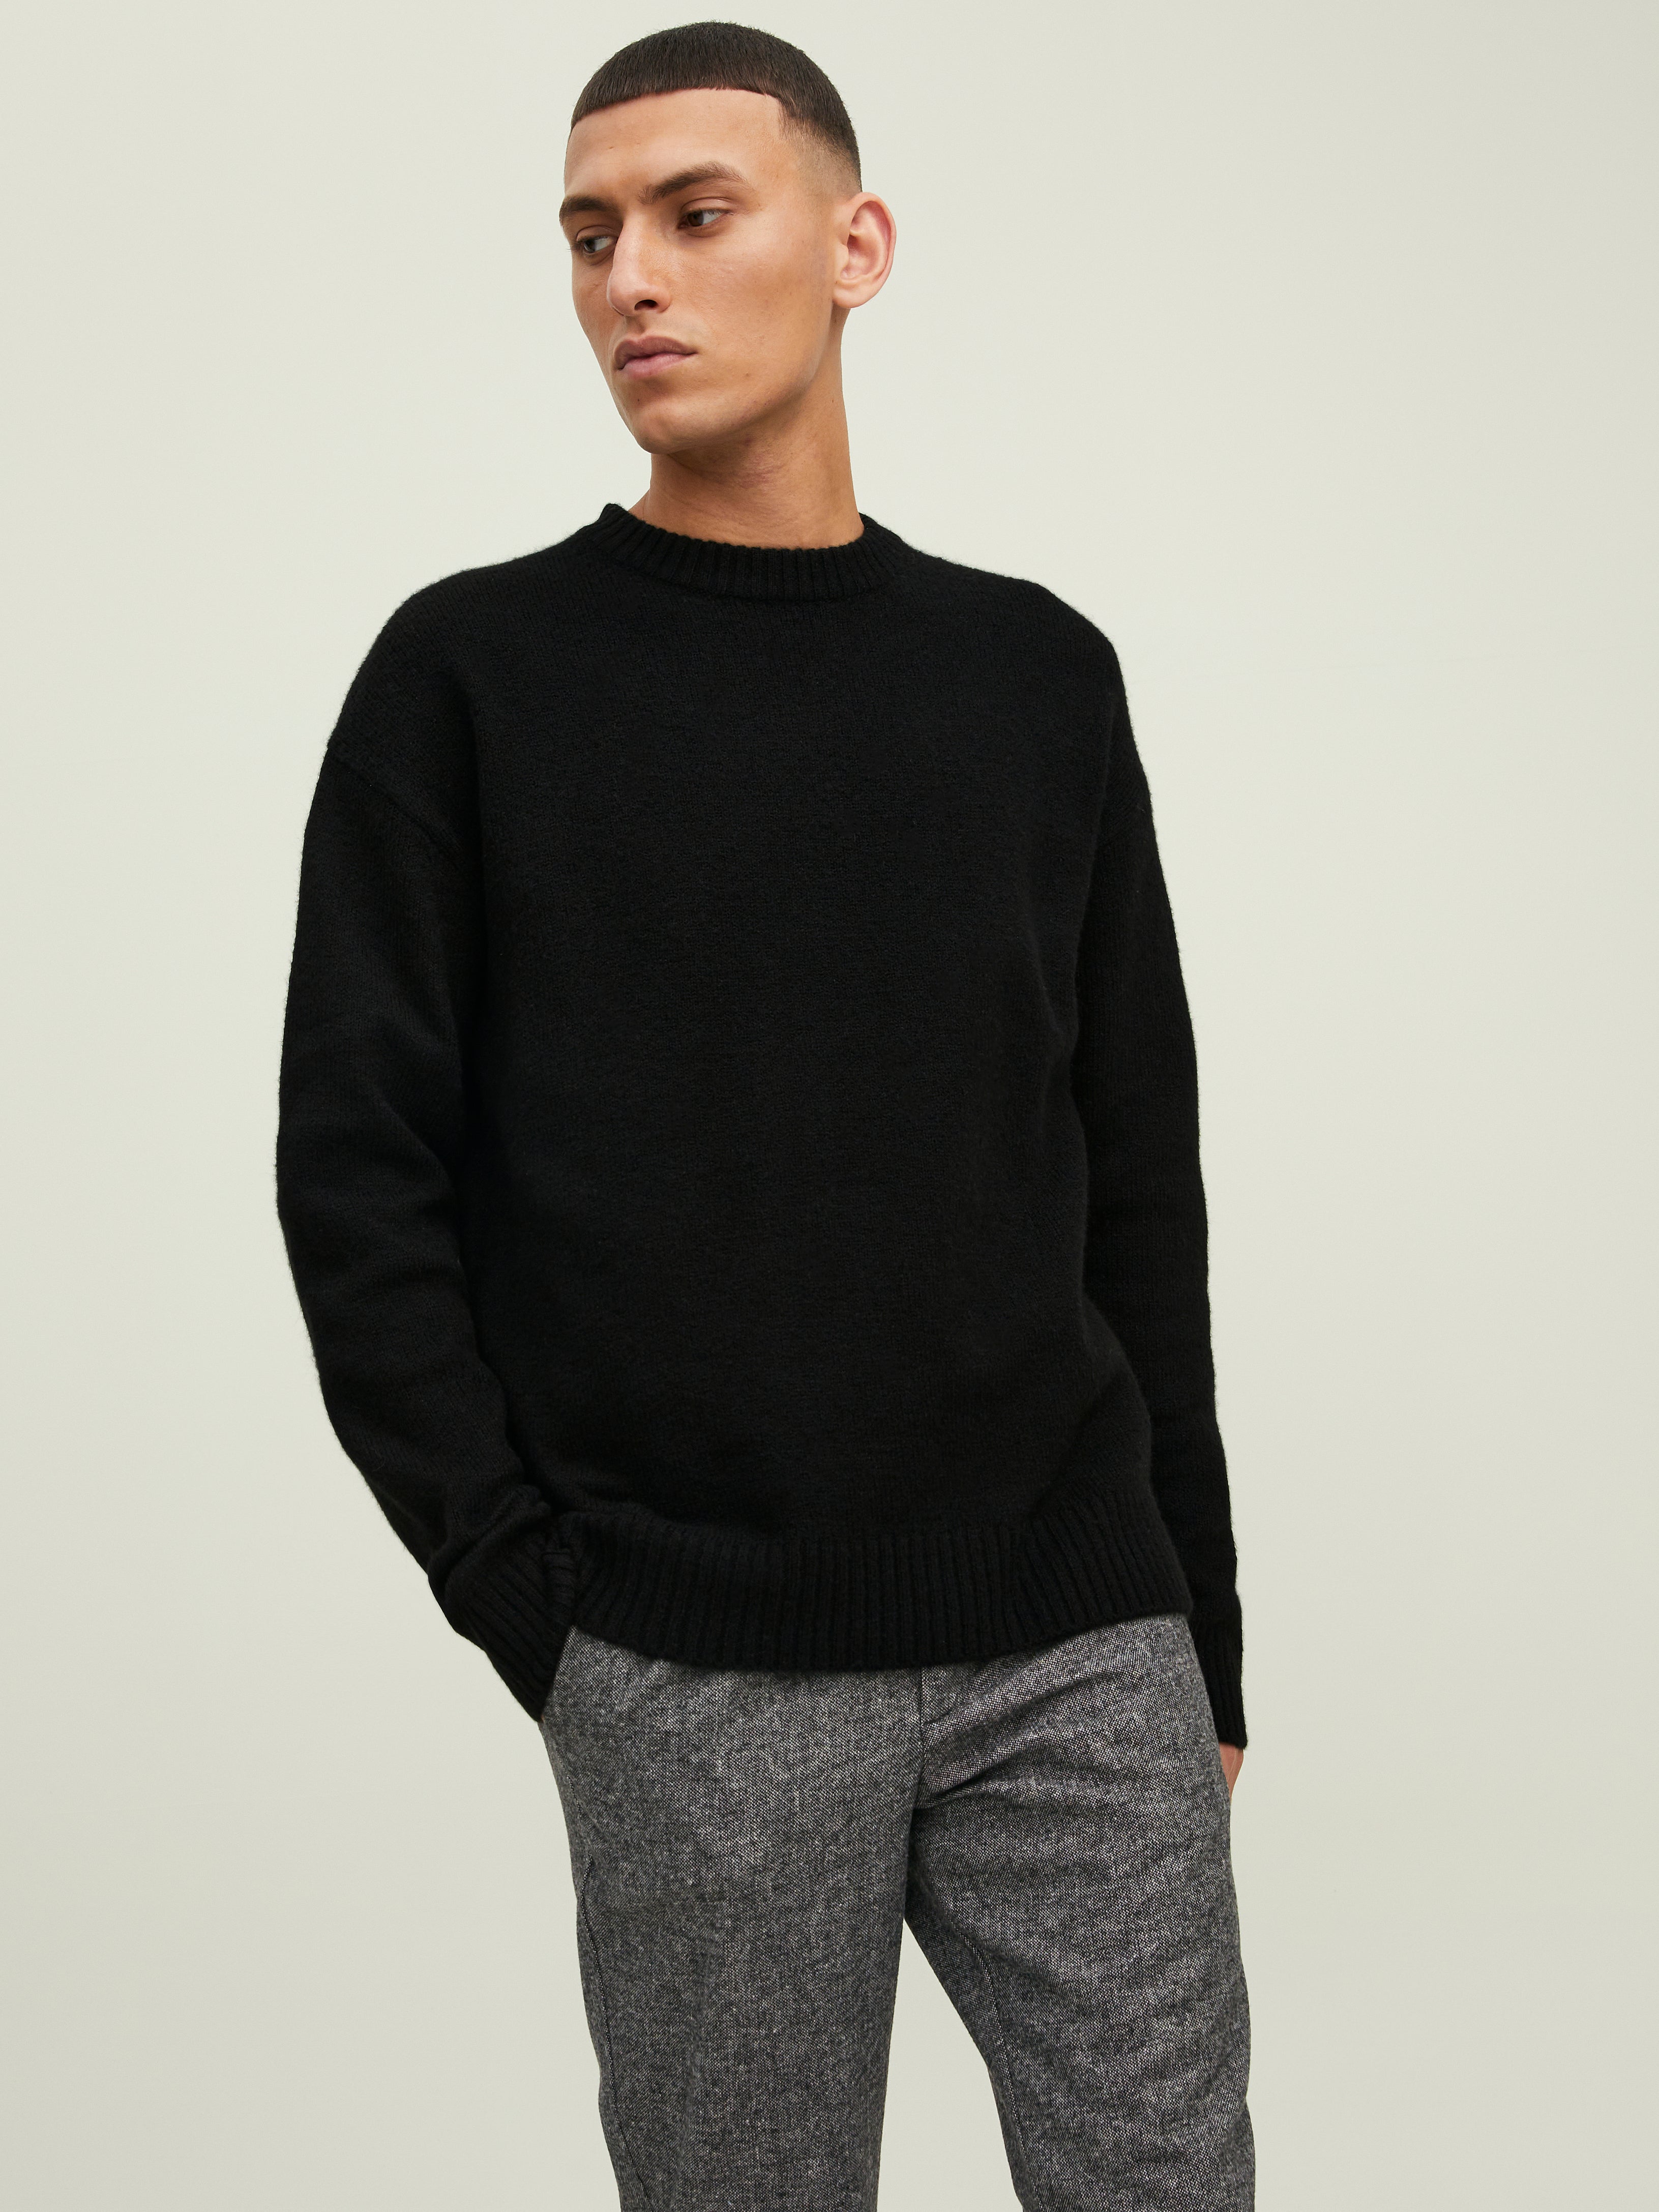 Pullover Coton Minimum pour homme en coloris Noir Homme Vêtements Pulls et maille Pulls ras-du-cou 